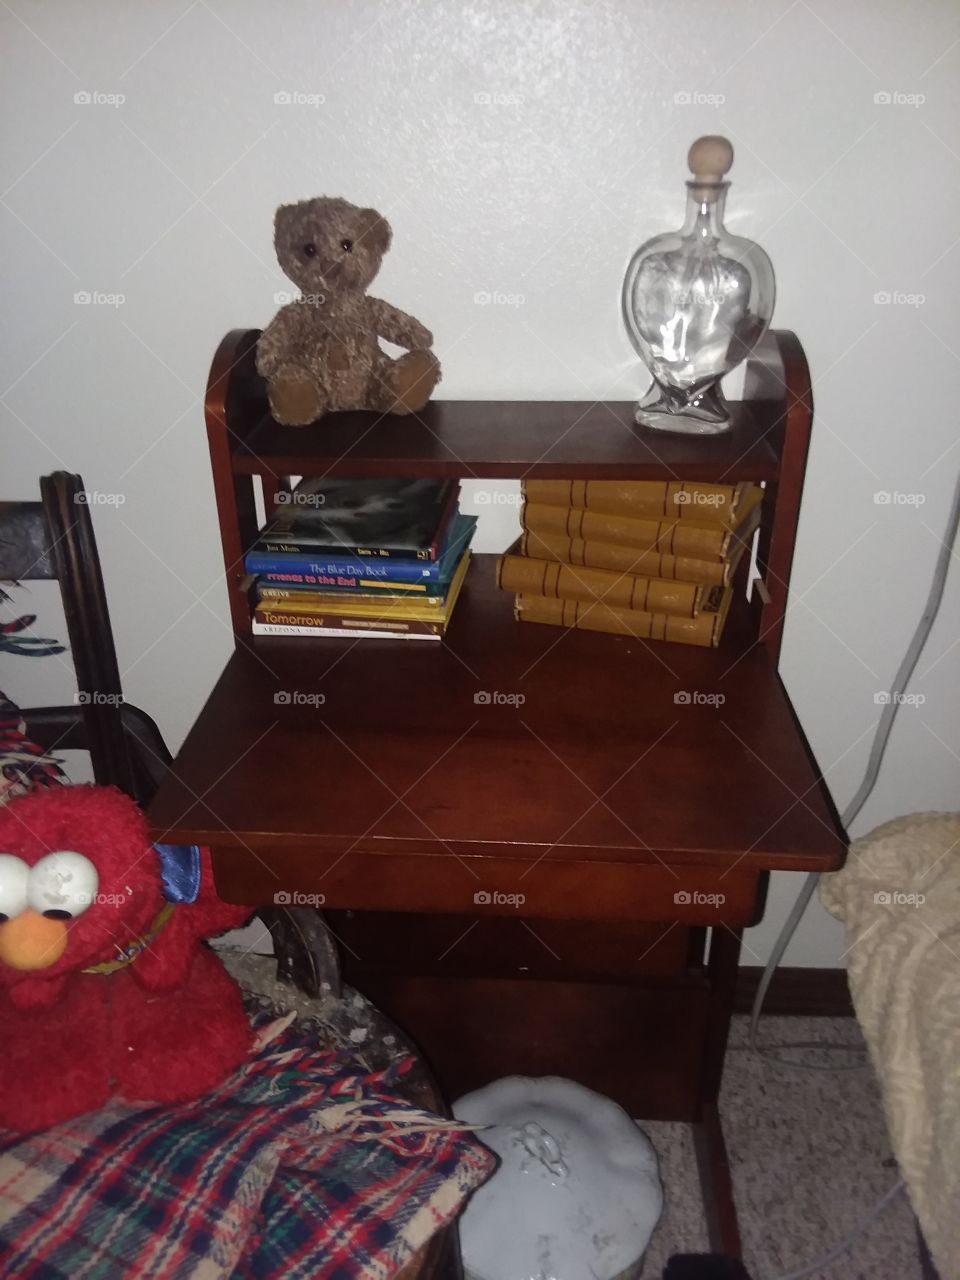 book chair desk bear glass